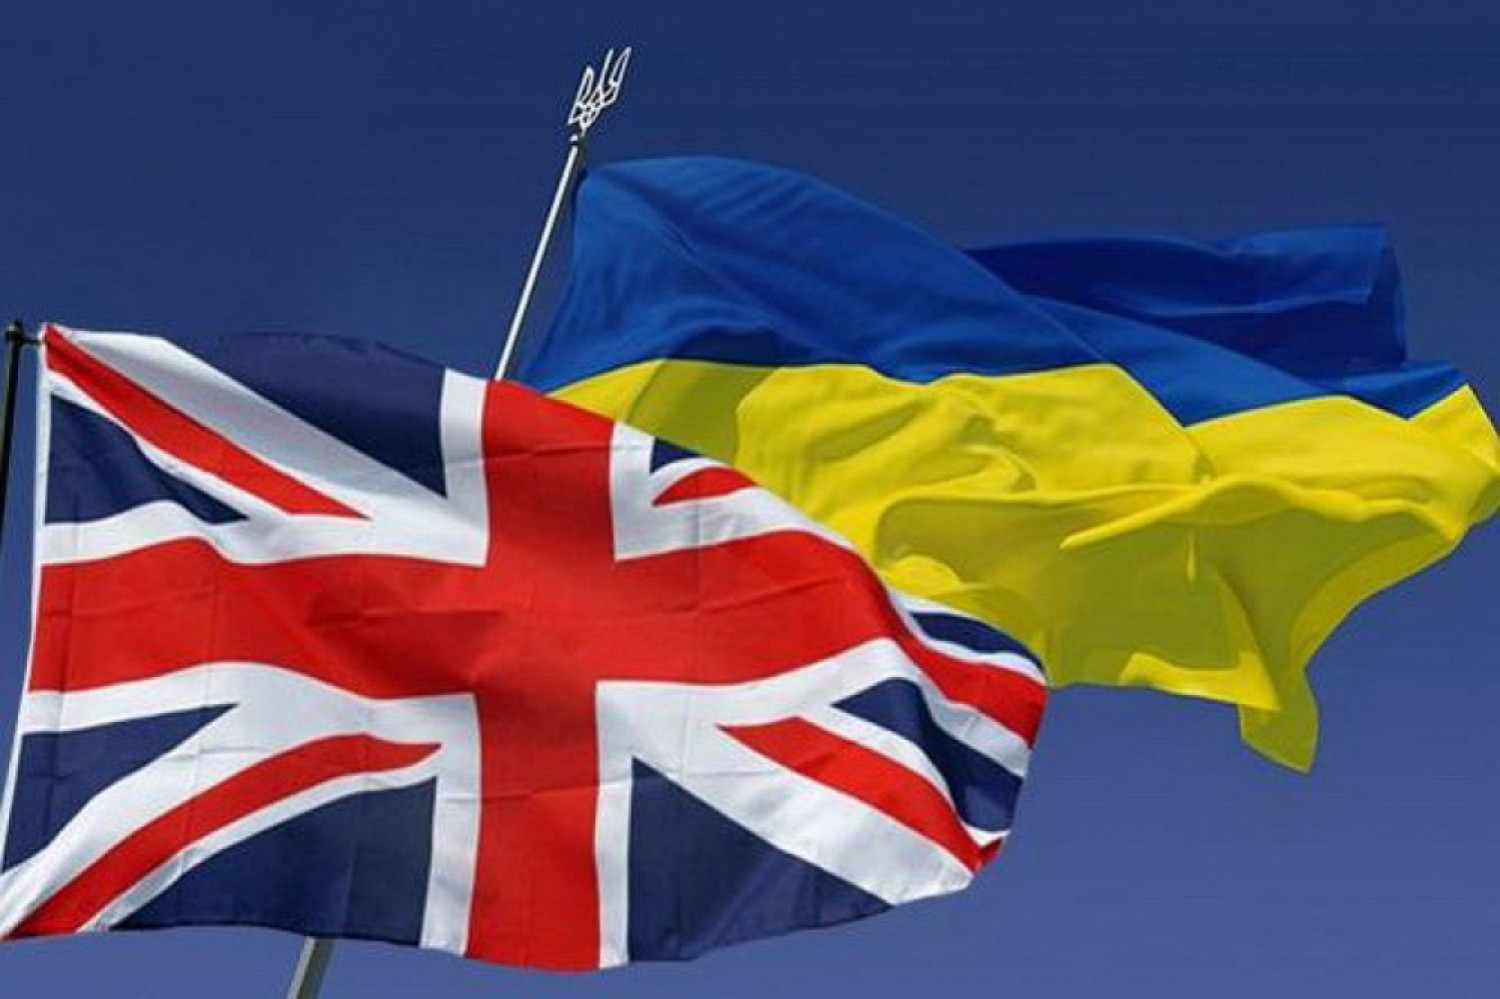 Chính phủ Anh trợ giúp 88 triệu bảng Anh cho Ukraine trong lĩnh vực chống tham nhũng và độc lập năng lượng